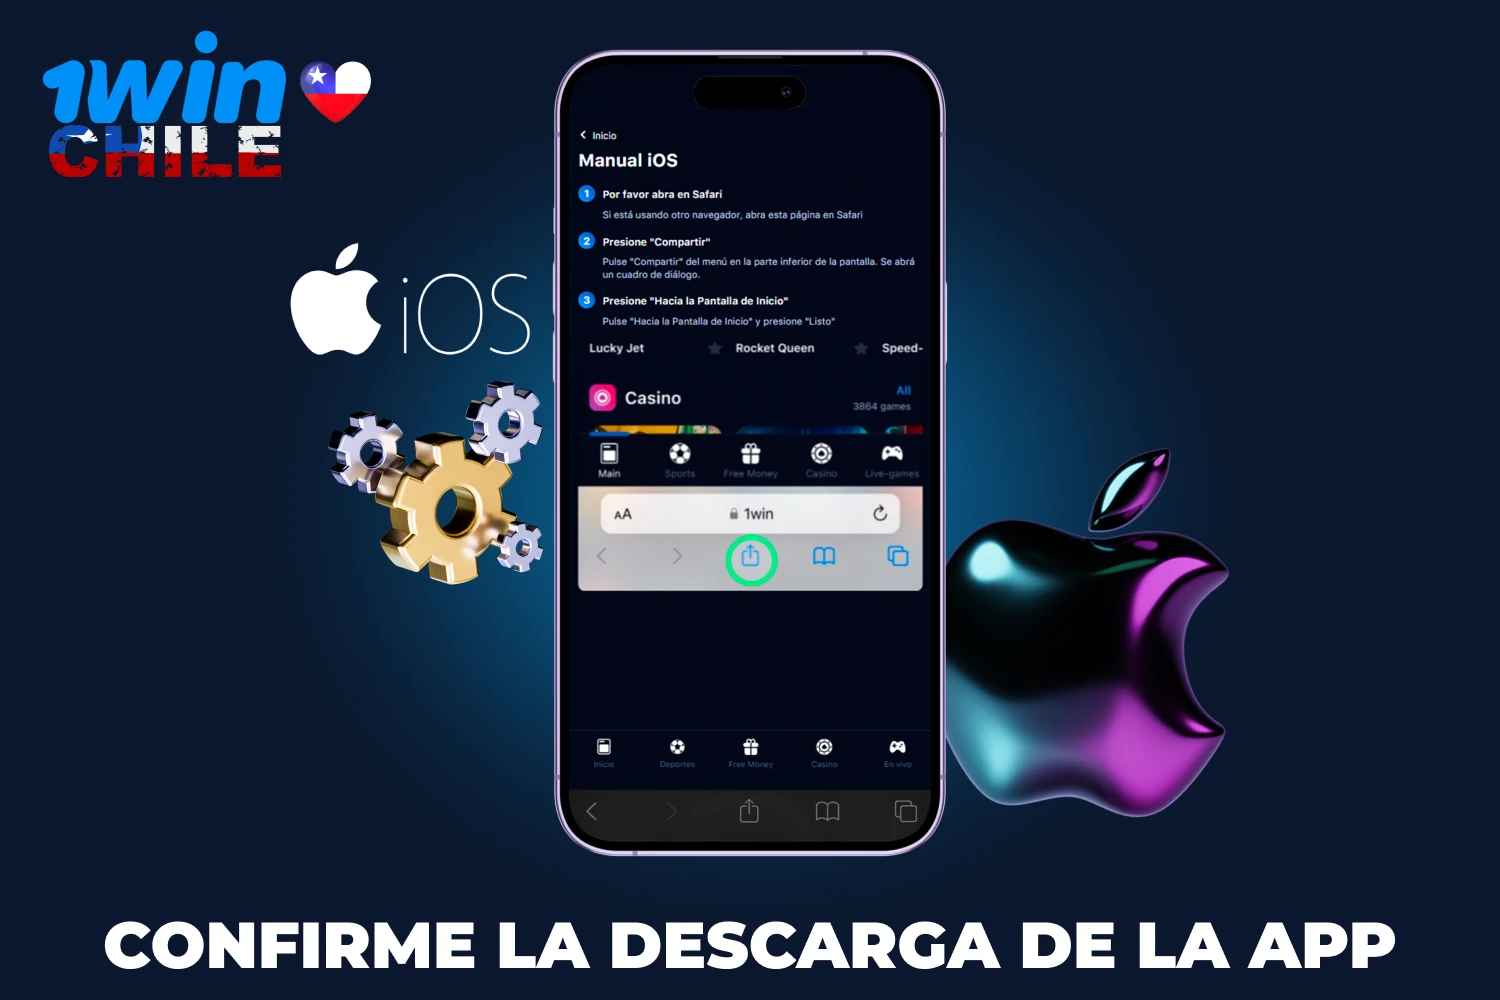 Los jugadores chilenos deben seguir las sencillas instrucciones para descargar la app de 1win en dispositivos iOS, que no tardarán mucho en completarse